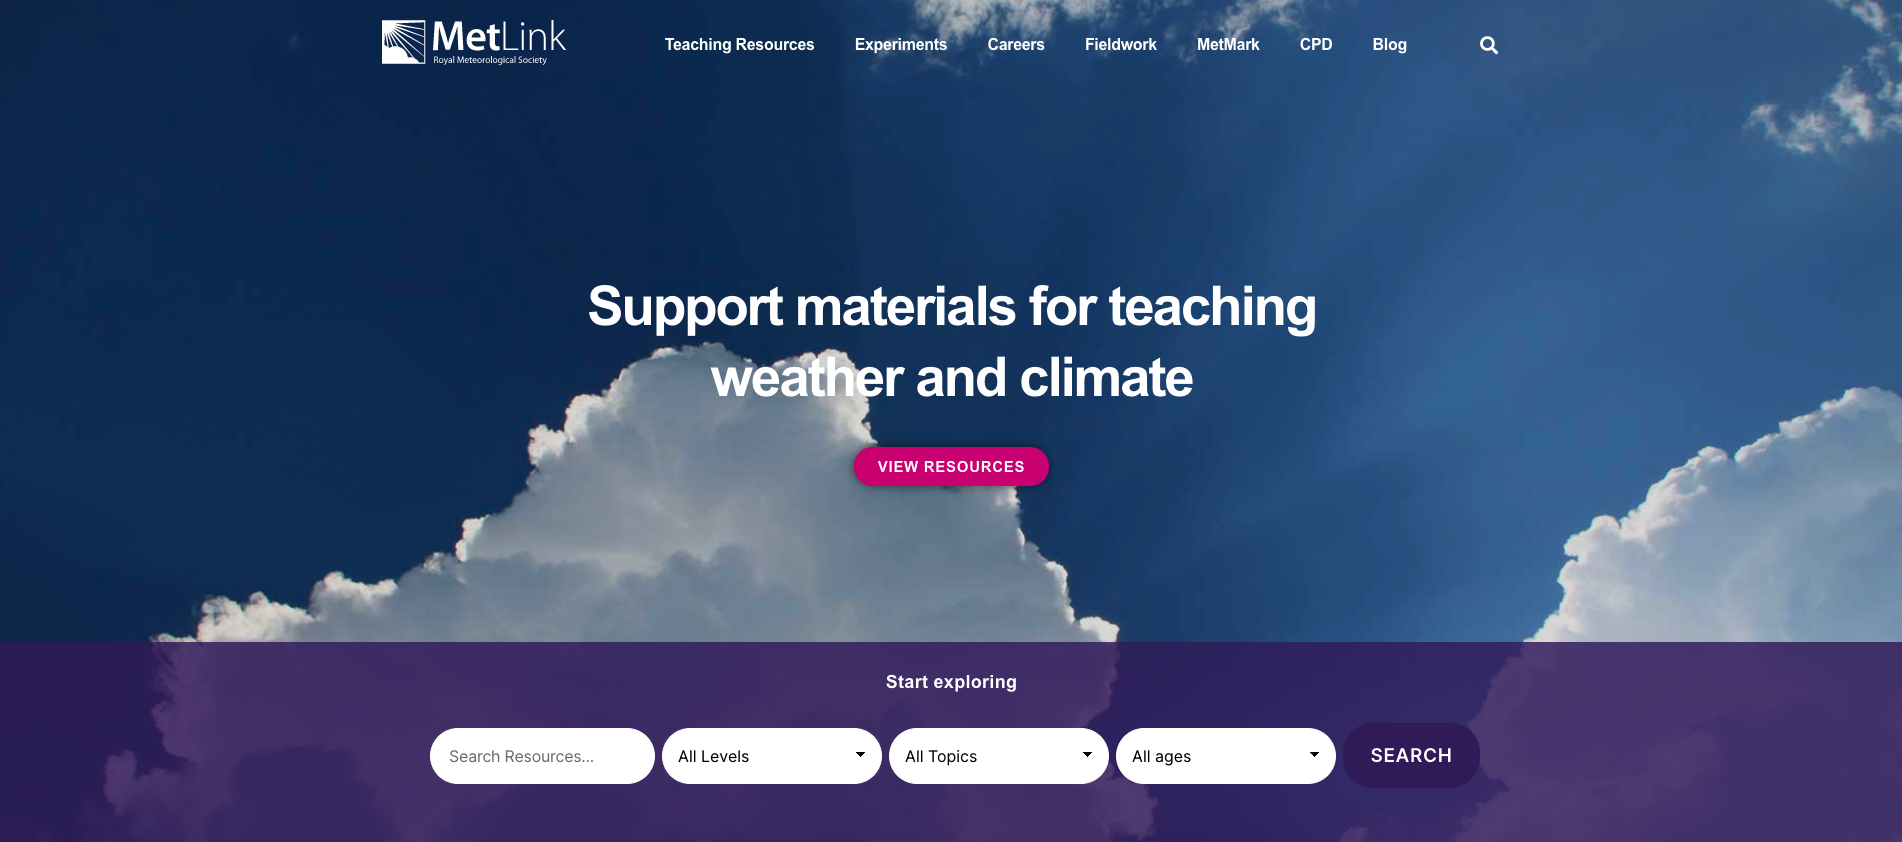 MetLink homepage screenshot